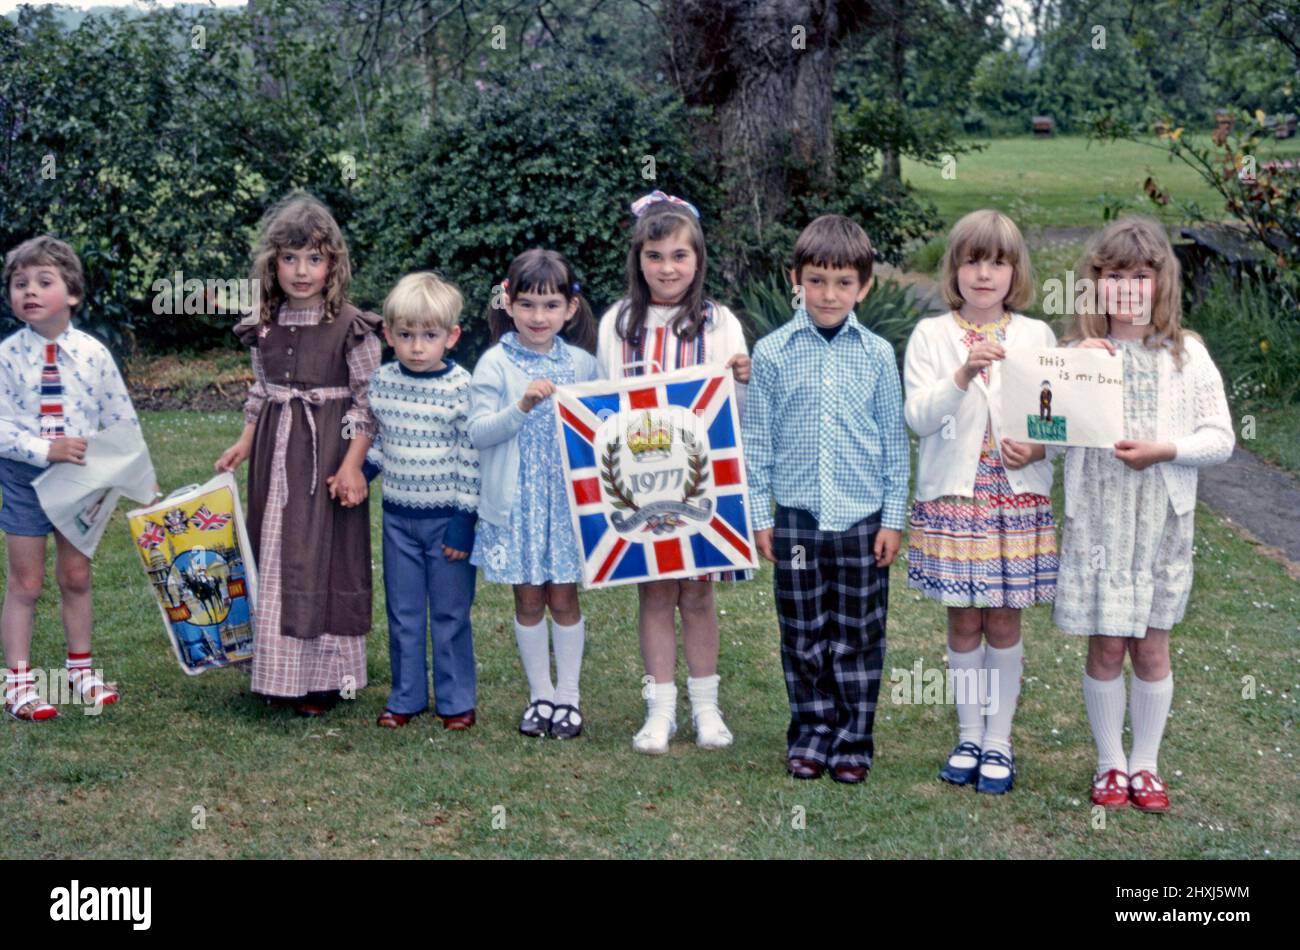 Eine Gruppe britischer Kinder, die am 7. Juni 1977 zusammenkommen, um das Silberjubiläum von Königin Elizabeth II. Zu feiern Hier halten die Kinder Plastikträger mit Jubilee-Bildern auf sich. Seltsamerweise halten zwei Kinder eine Zeichnung der TV-Comedy-Figur Mr Bean (die Worte lauten ‘This is ‘Mr Bene’). Dieses Bild stammt von einem alten Kodak-Amateurfotograf mit Farbtransparenz – einem Vintage-Foto aus dem Jahr 1970s. Stockfoto